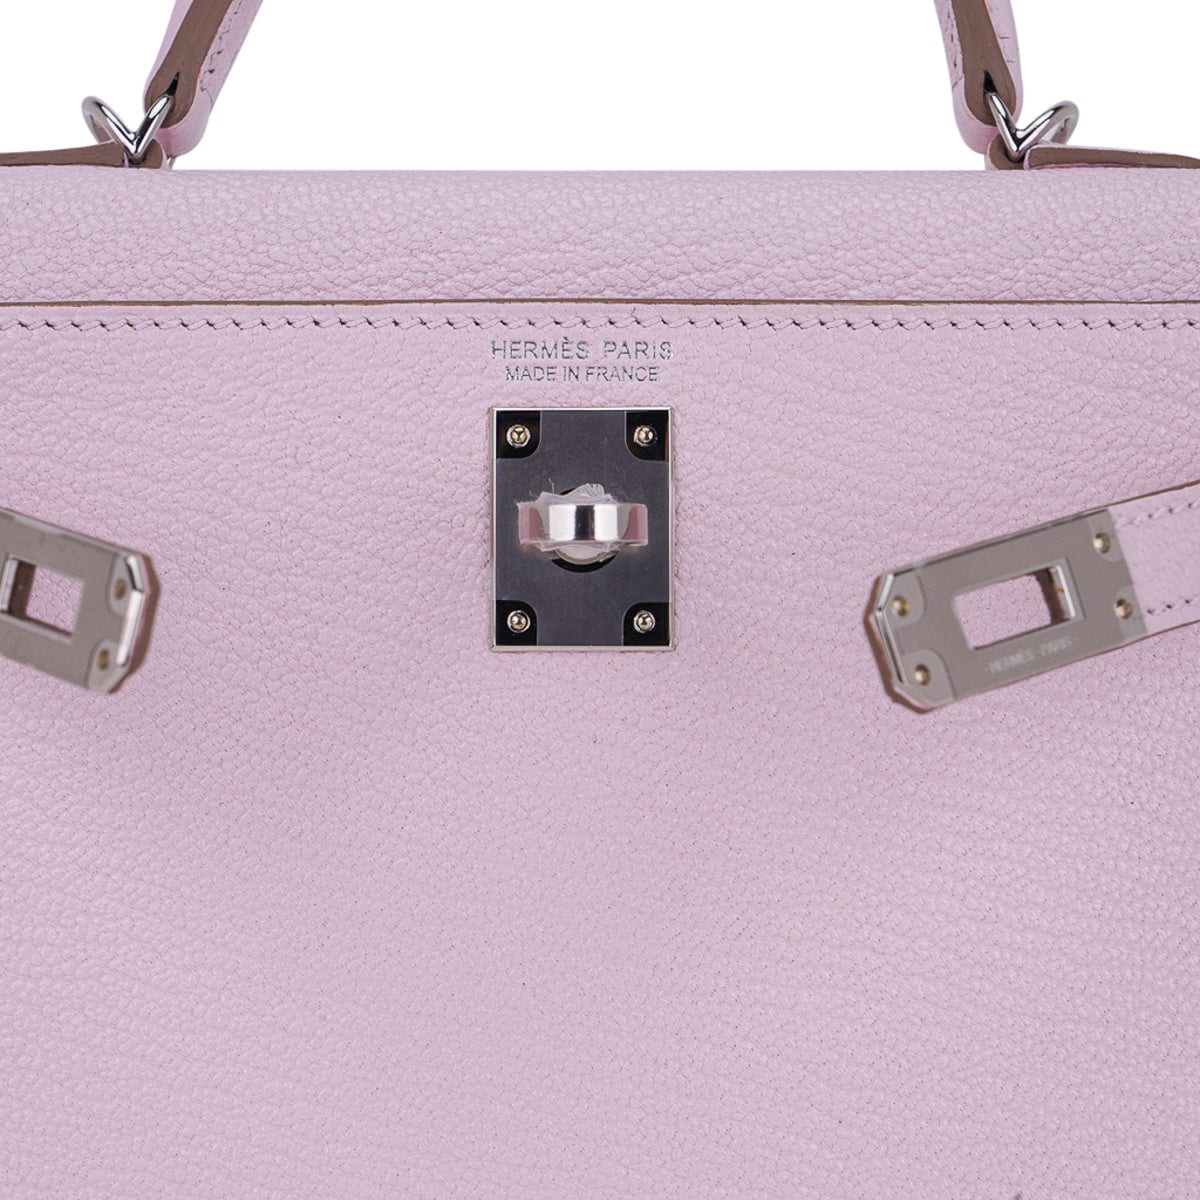 Hermes Purple Epsom Leather Palladium Hardware Mini Kelly Sellier 20 Bag  Hermes